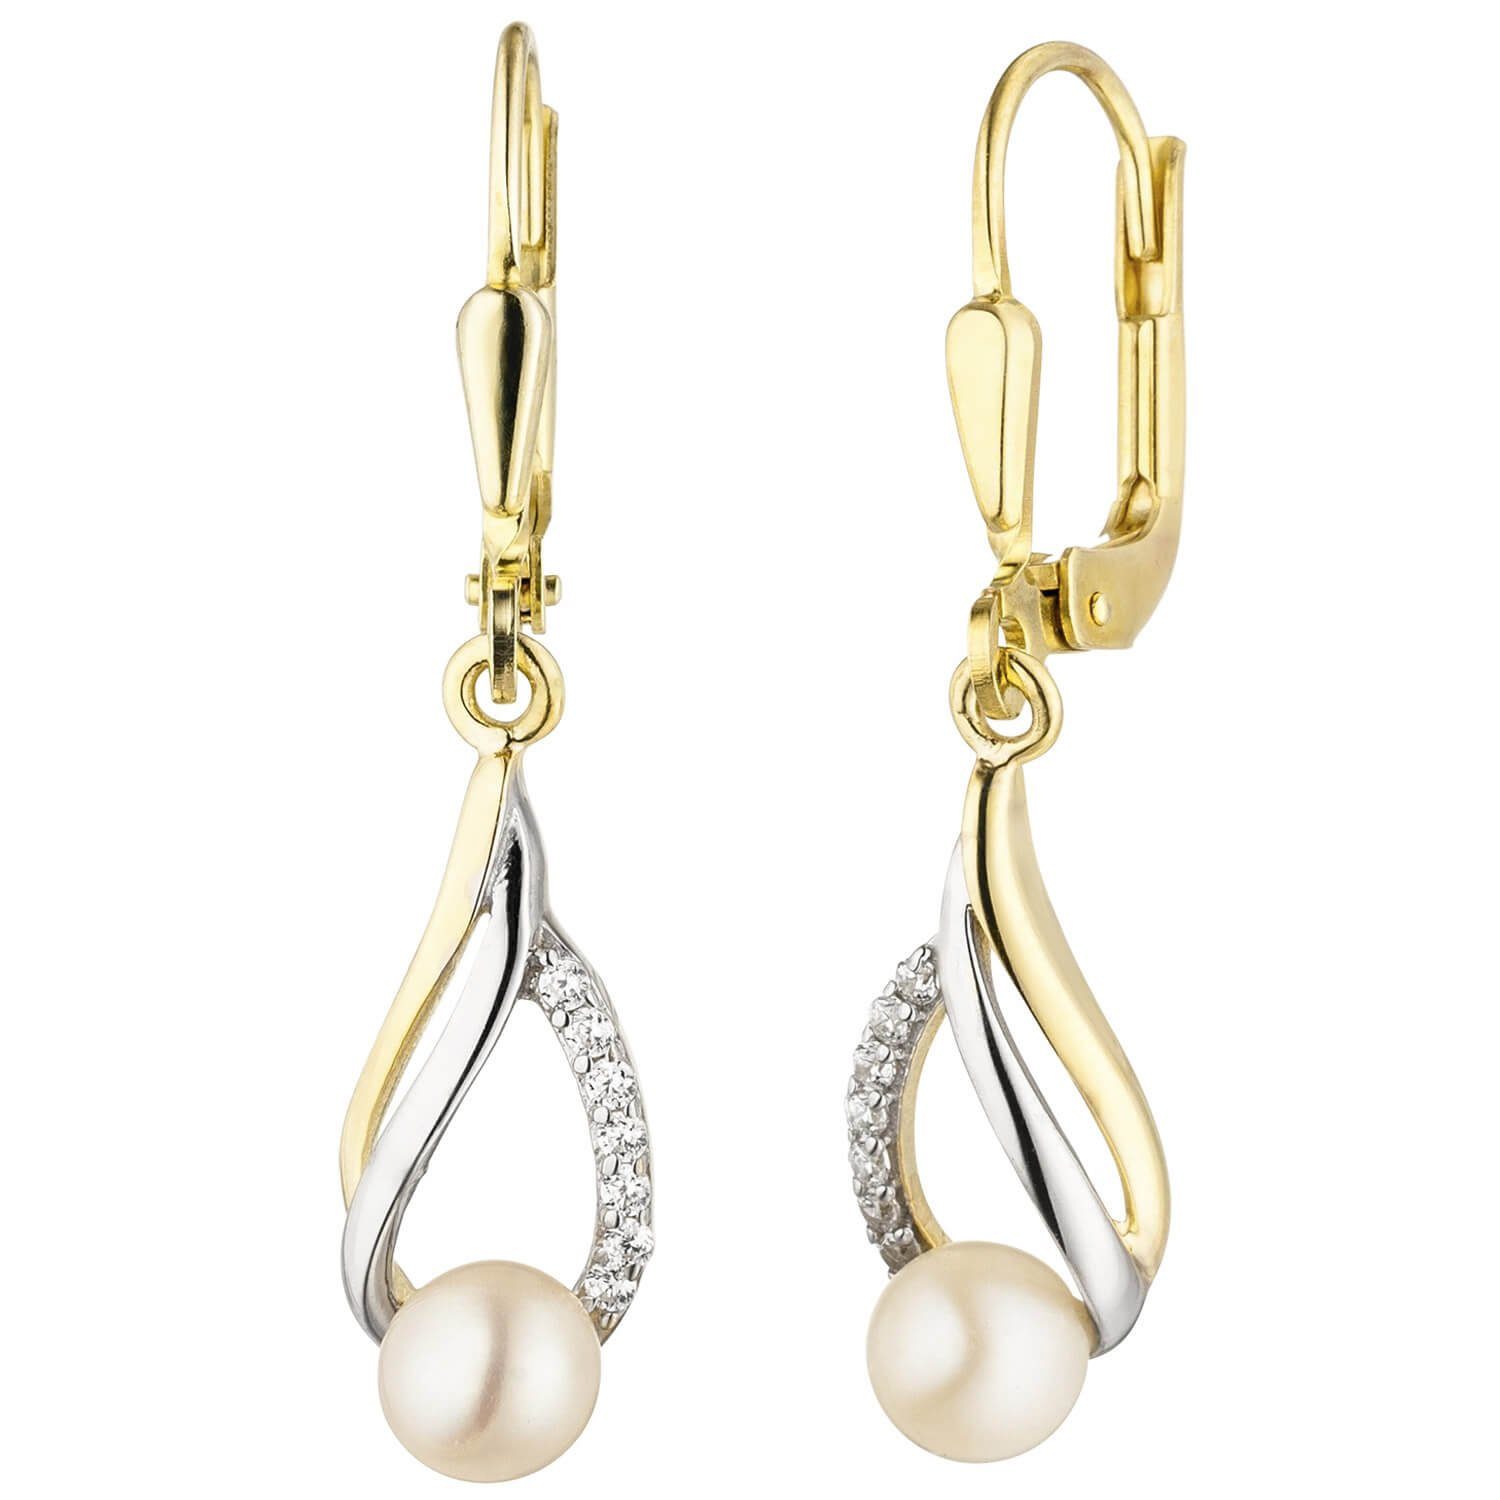 Schmuck Krone Paar Ohrhänger Ohrhänger Süßwasser-Perlen weiß & 14 Zirkonia, 333 Gold Gelbgold teilrhodiniert | Ohrhänger